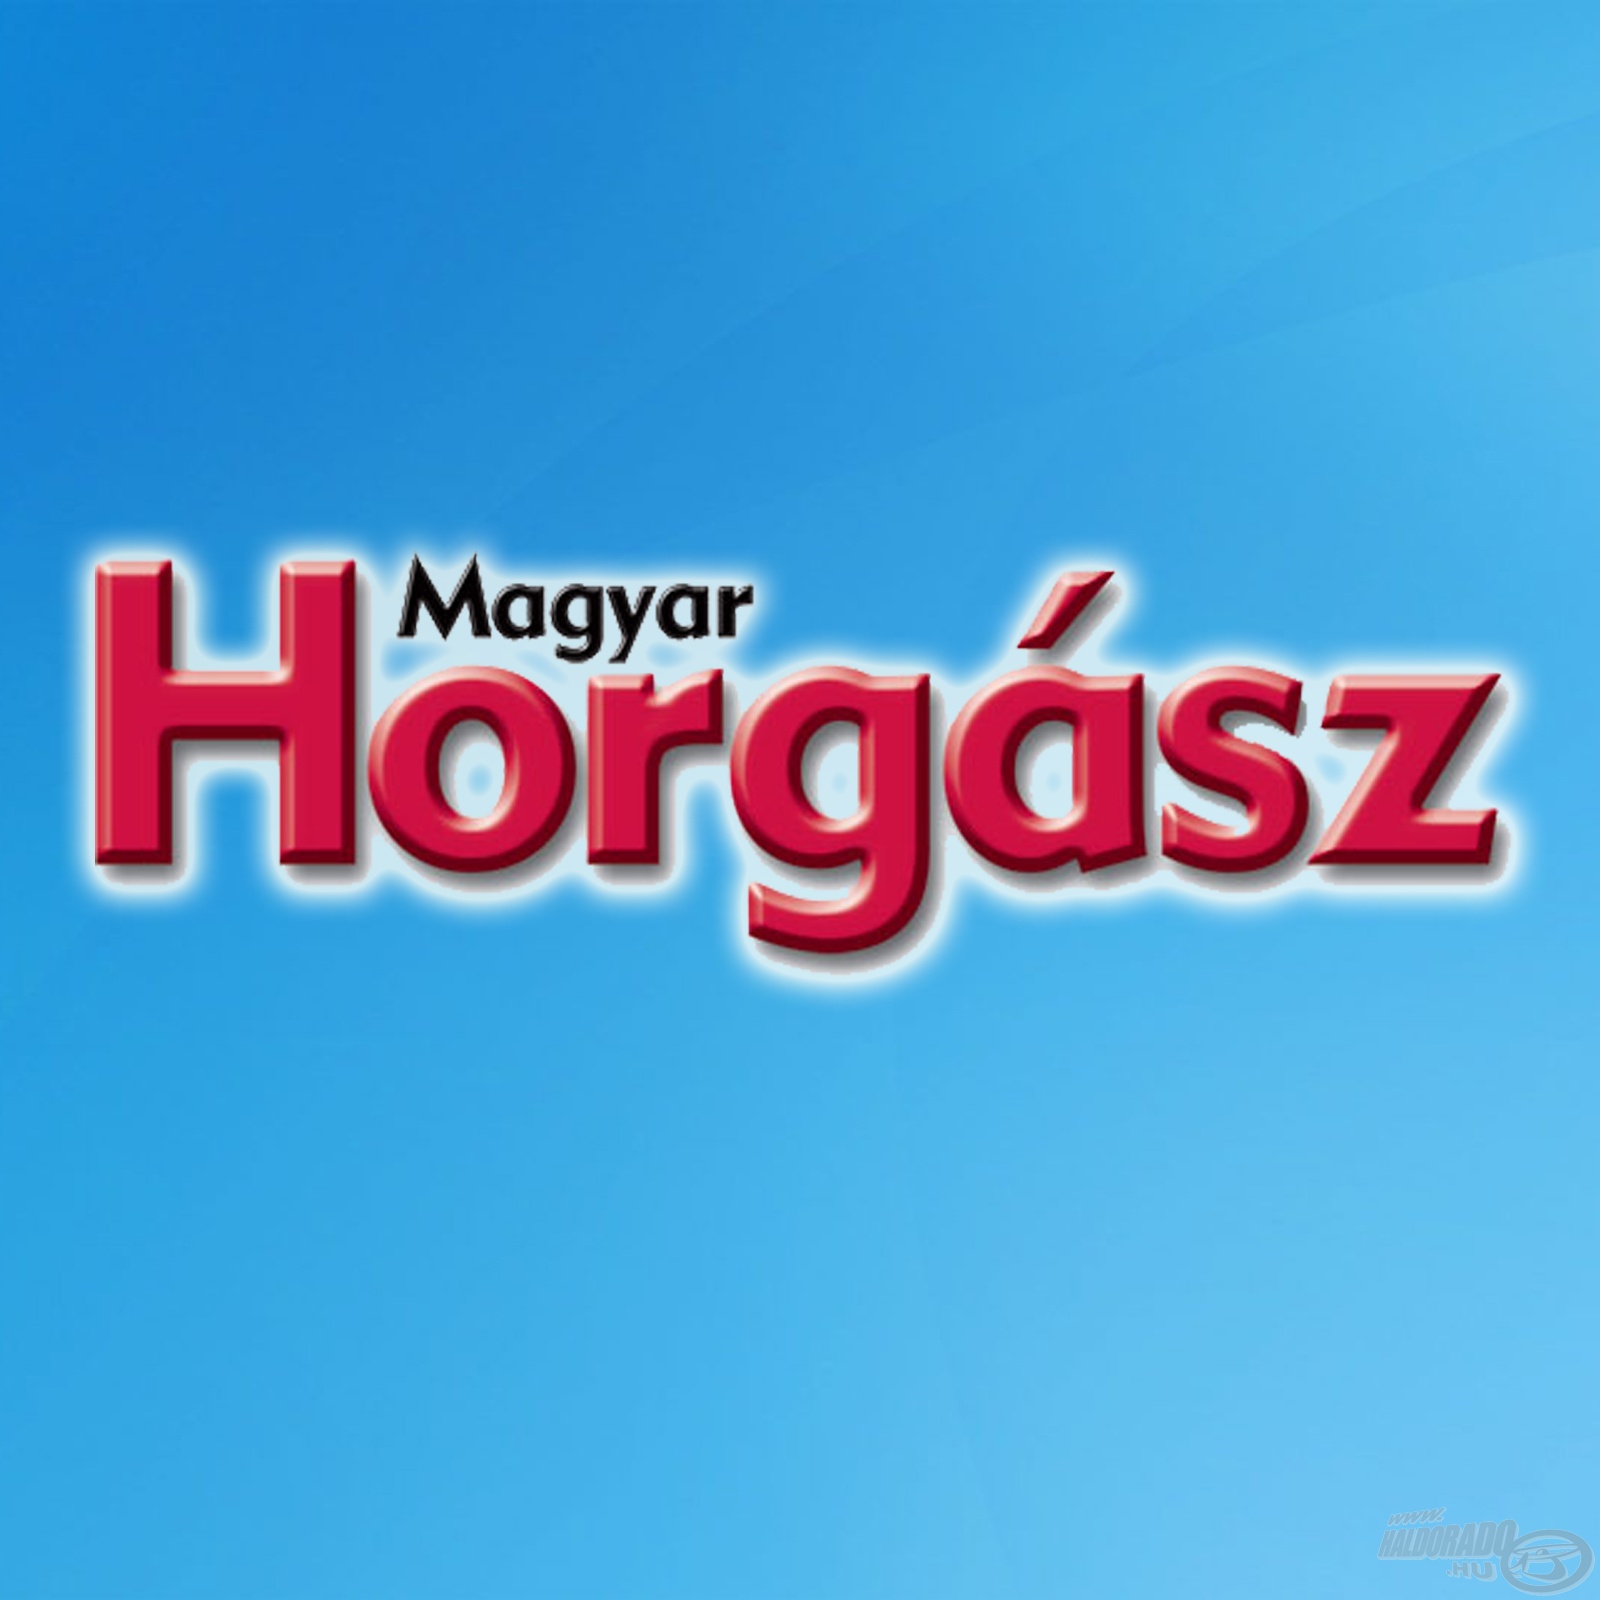 Magyar Horgász